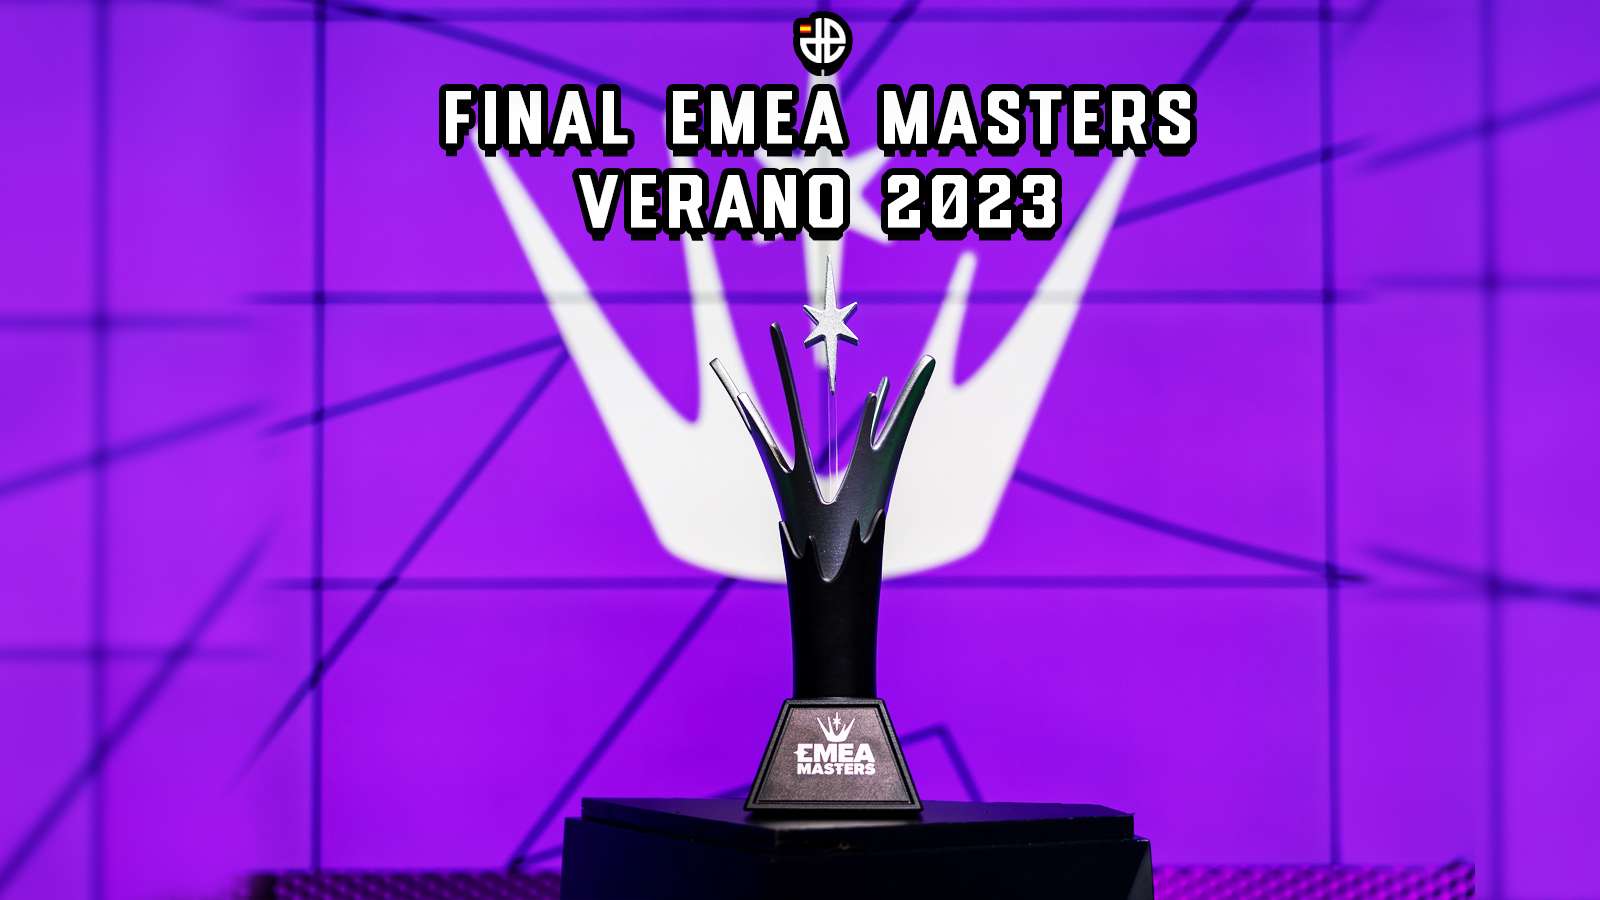 Final emea masters 2023 verano